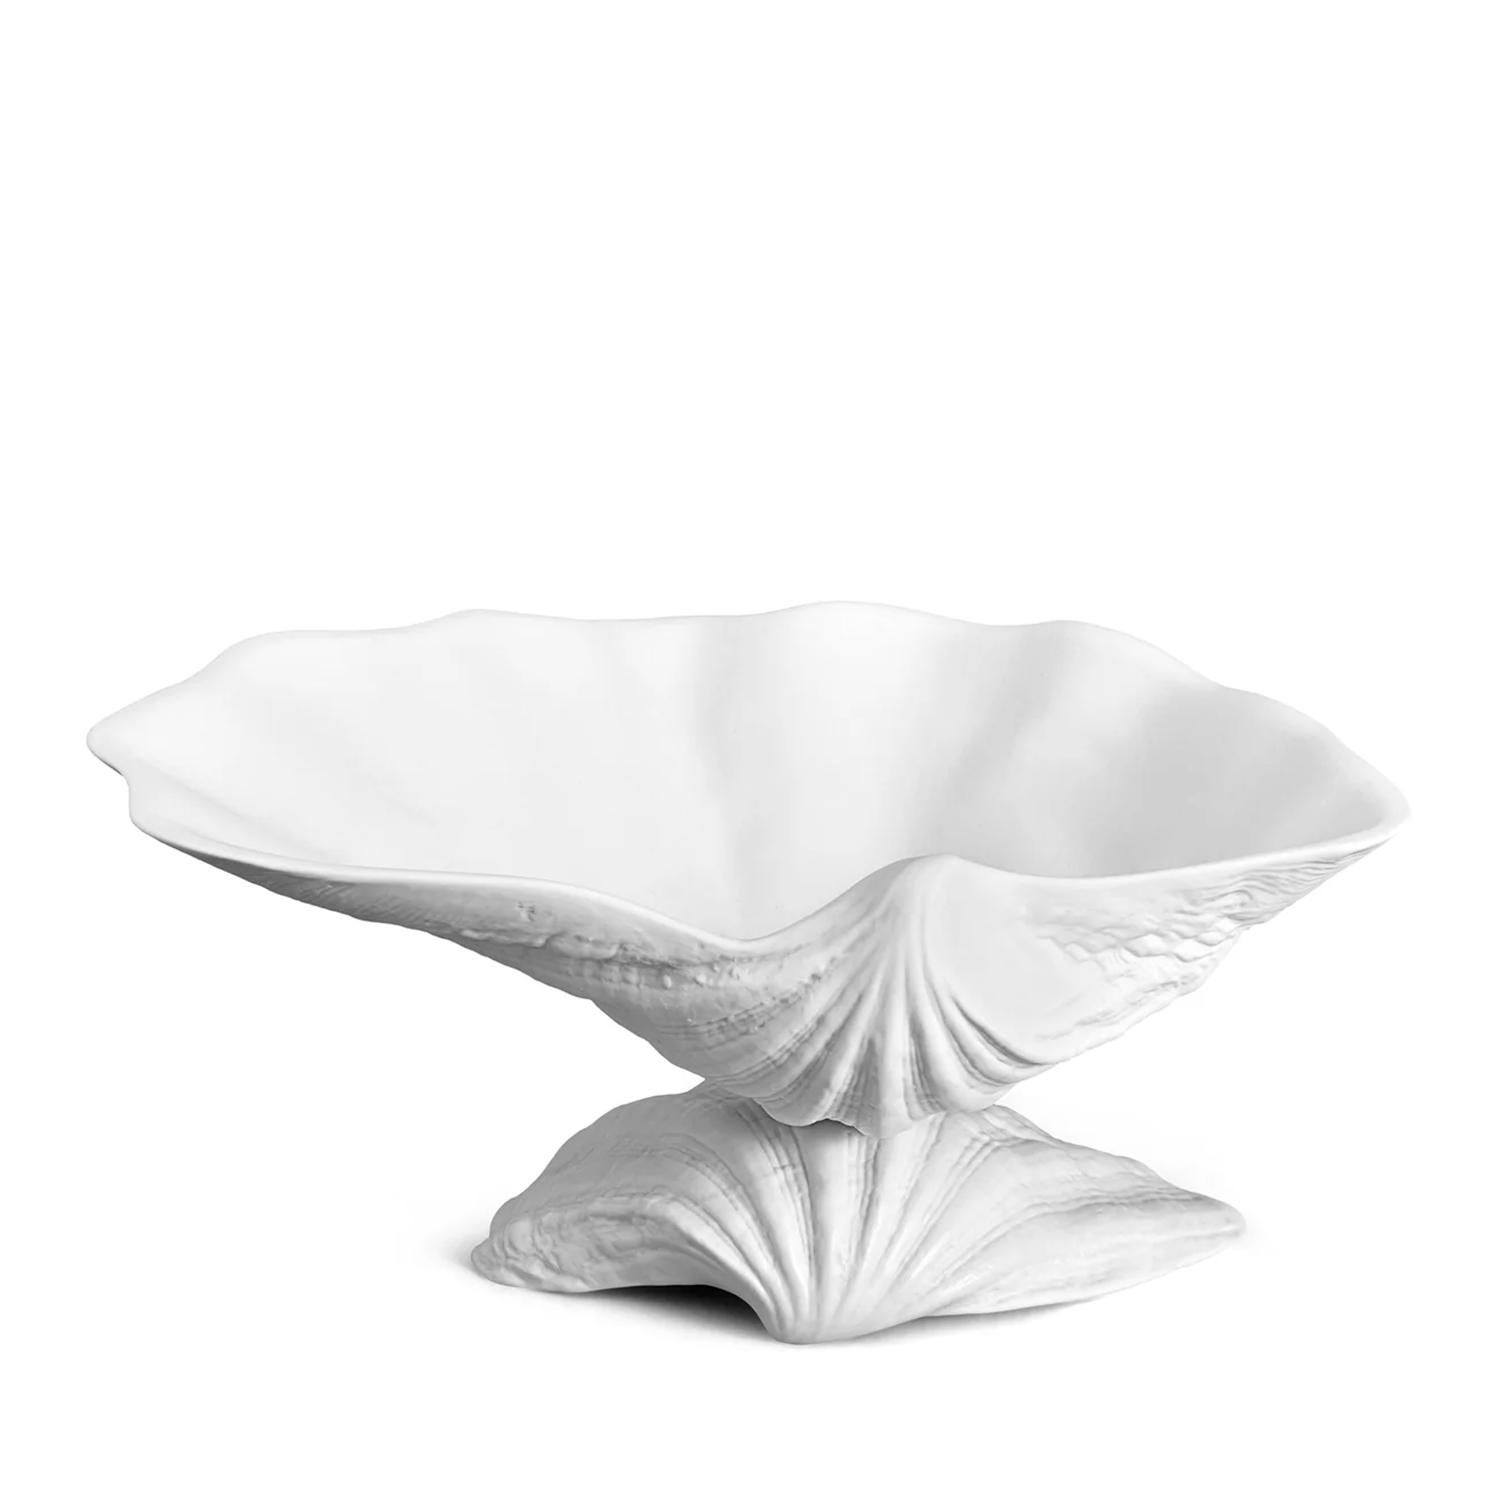 Schale Sea Shell Medium mit aller Struktur in 
feines handgefertigtes Porzellan in weißer Ausführung.
Wird in einer luxuriösen Geschenkbox geliefert.